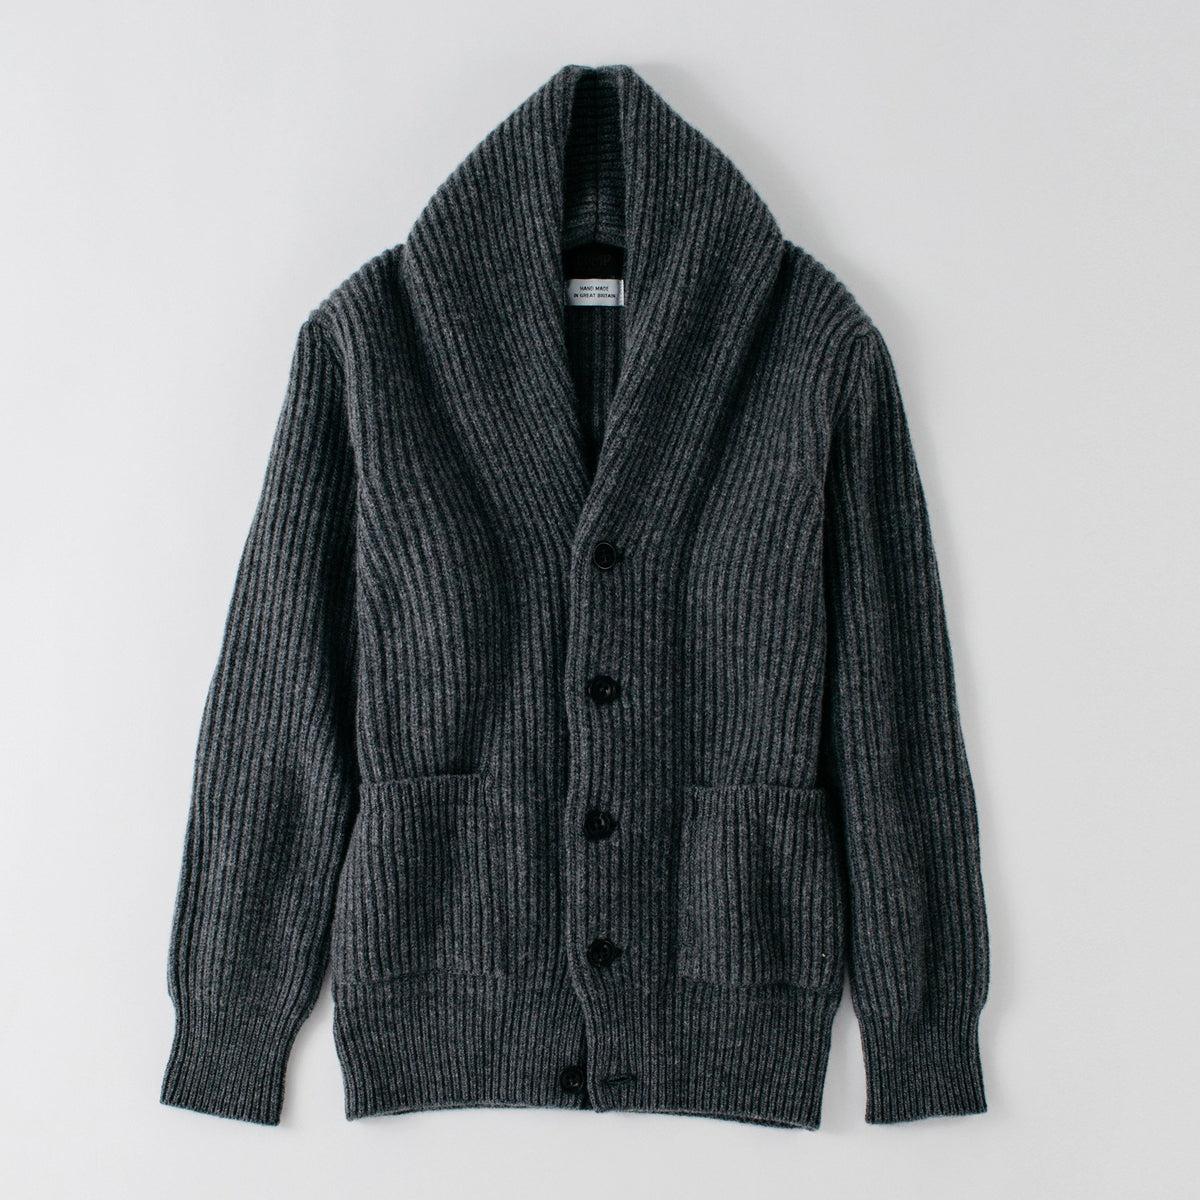 Rogue Shawl Cardigan - Darby Grey knitwear Commonwealth Proper